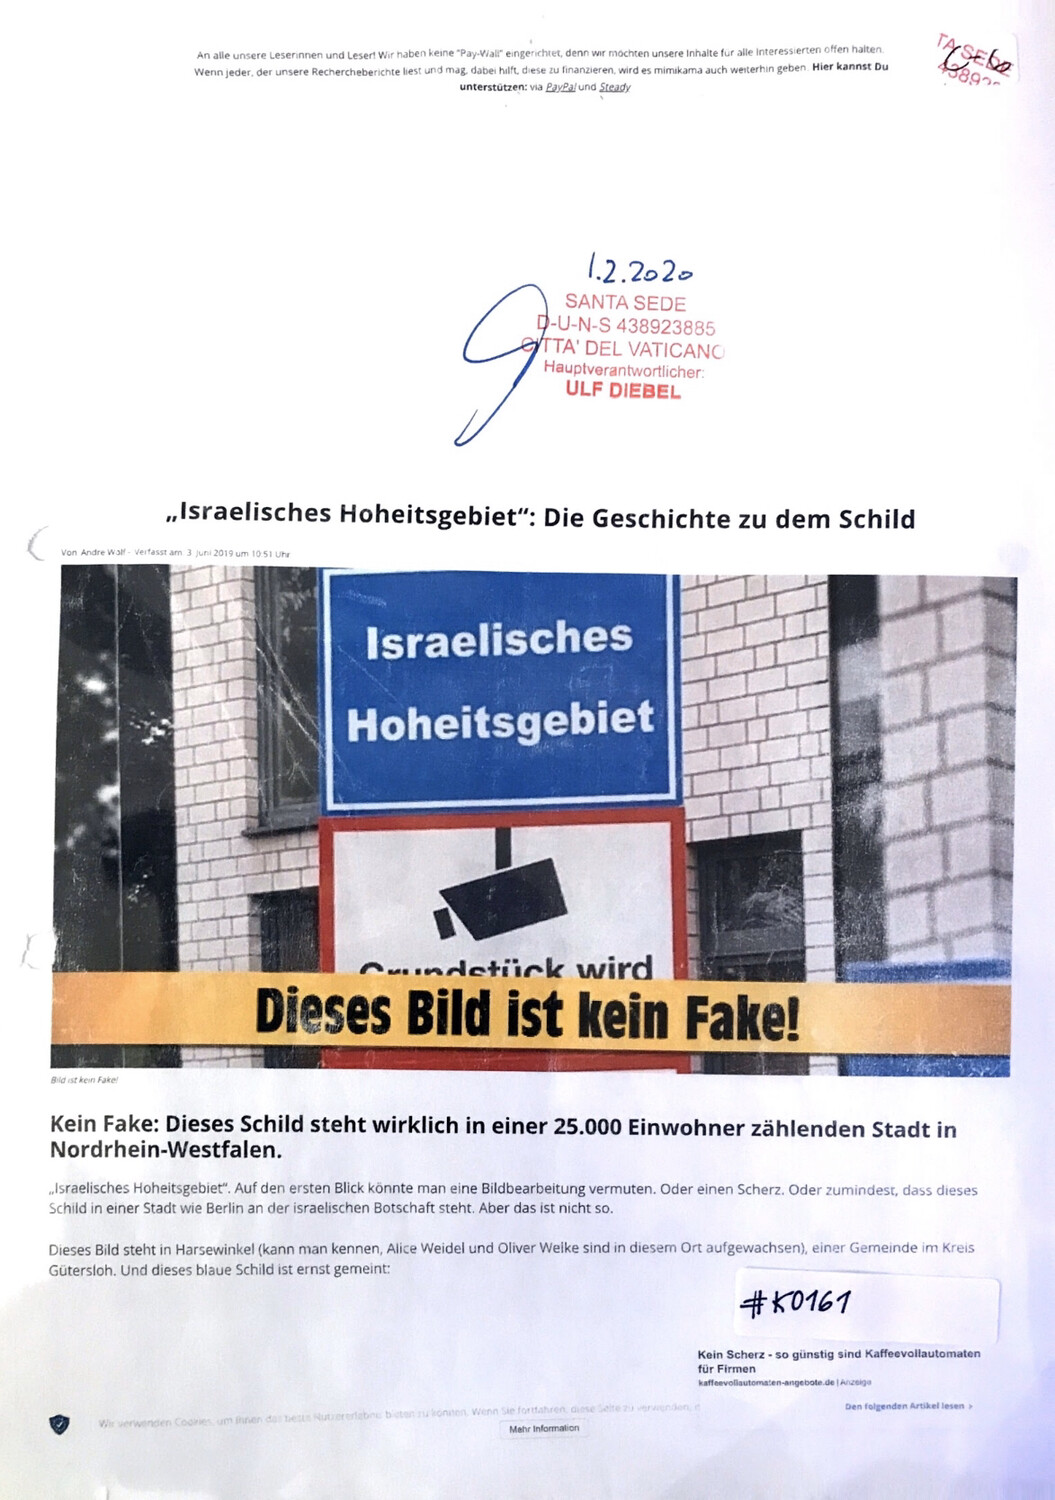 #K0161 l Israelisches Hoheitsgebiet: Die Geschichte zu dem Schild l Santa Sede - Hauptverantwortlicher Ulf Diebel 